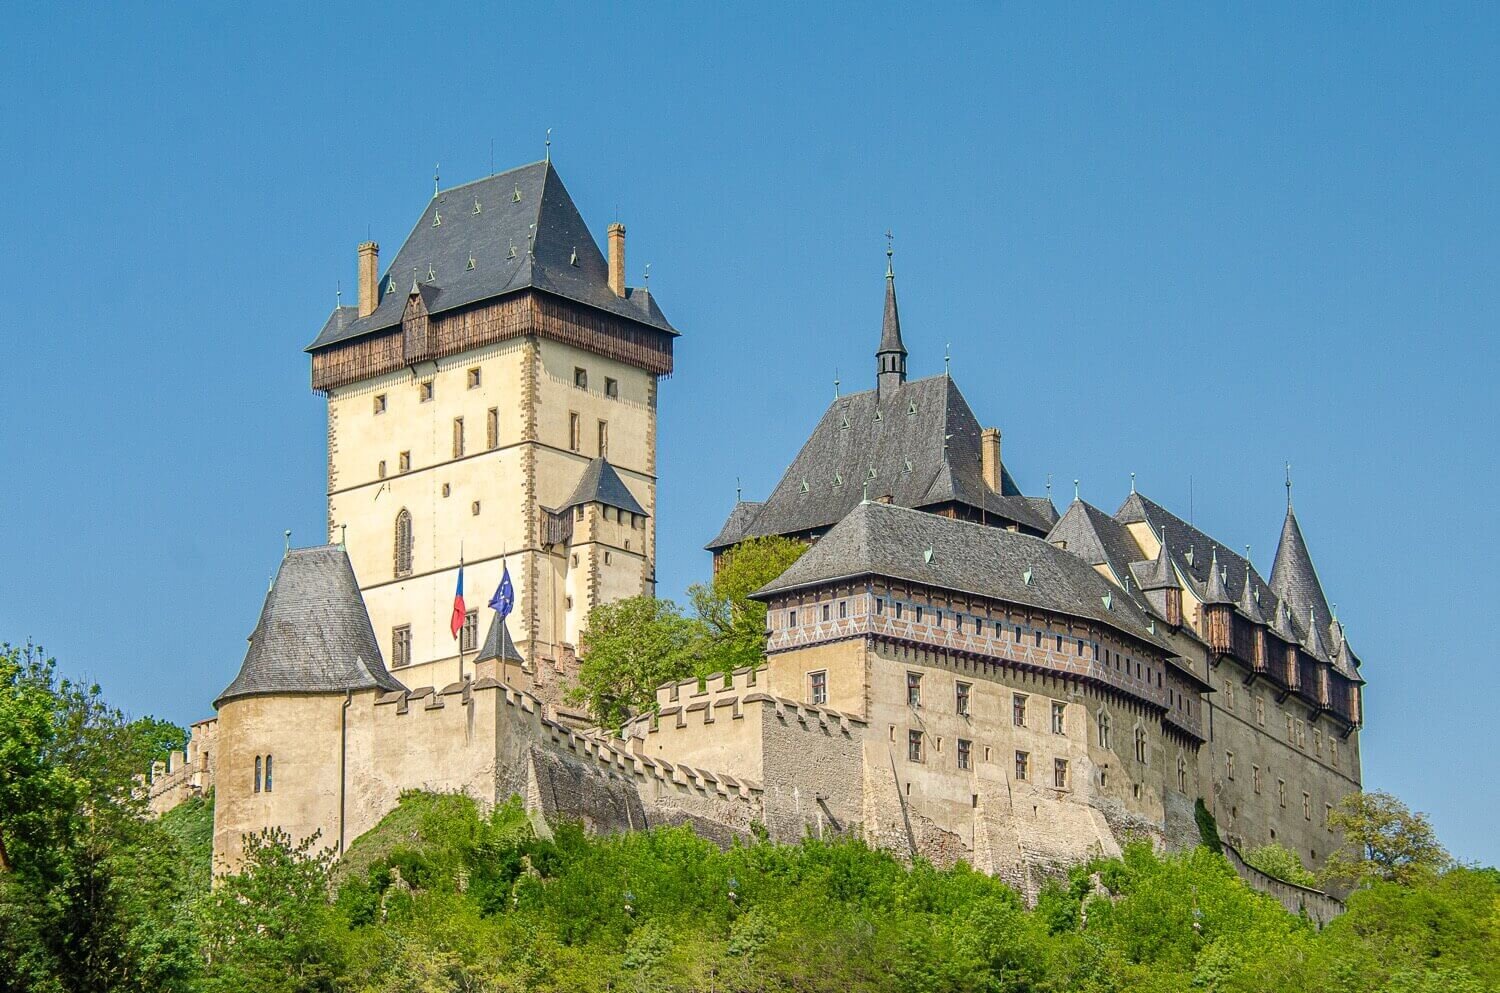 El castillo medieval de Karlstejn fue construido por Carlos IV rey de Bohemia en el siglo XIV. Cosas que hacer en República Checa. Turismo rural cerca de Praga.